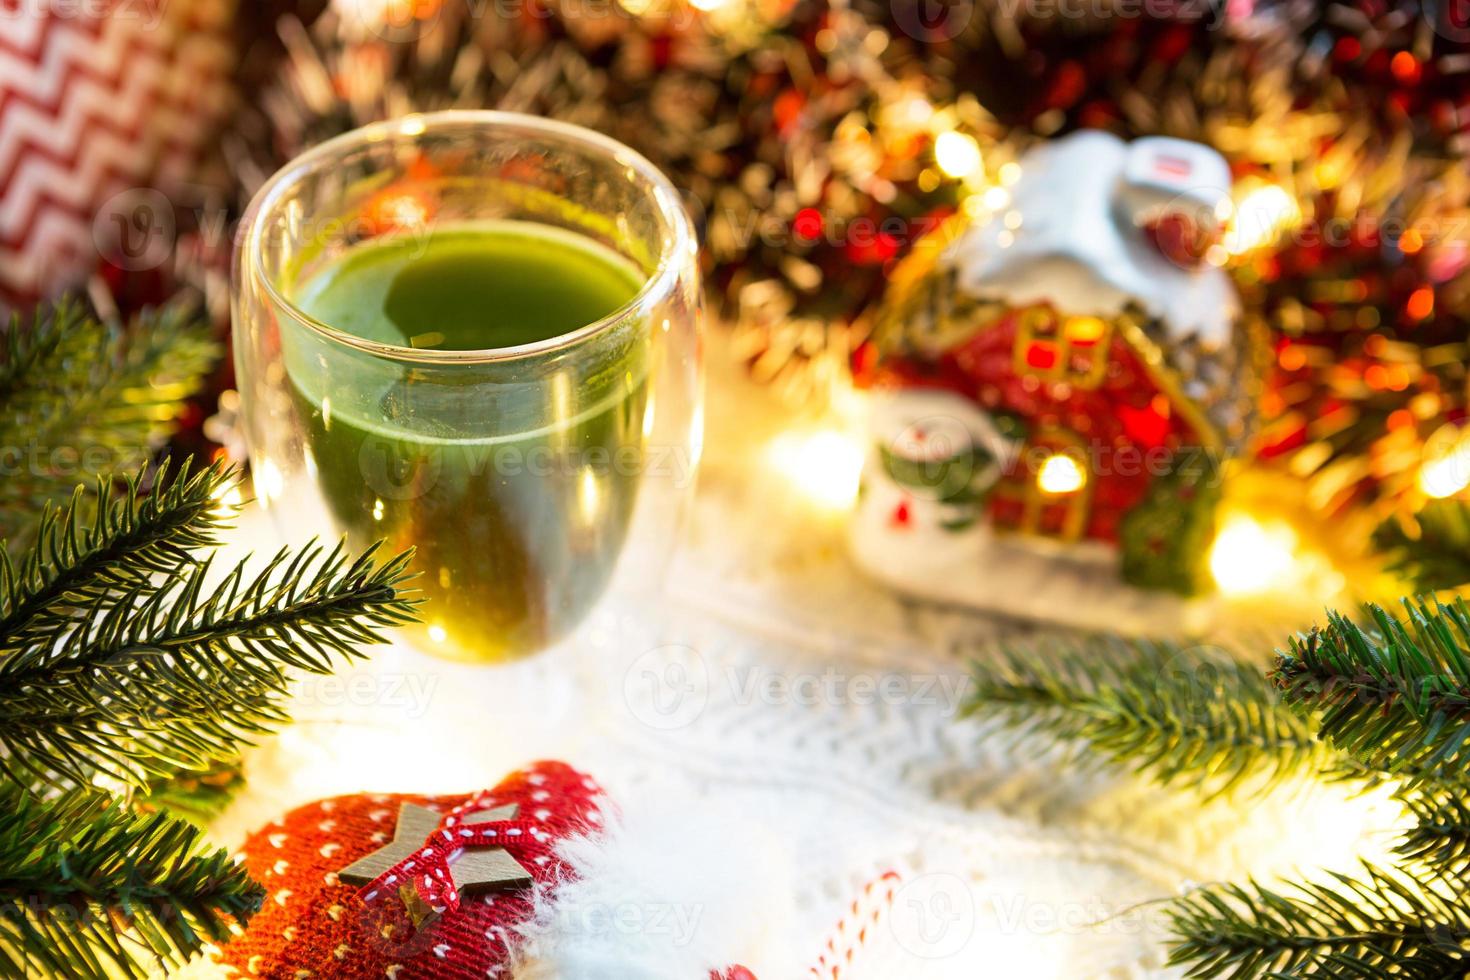 copo de vidro transparente de parede dupla com chá matcha japonês na mesa com decoração de natal. atmosfera de ano novo, guirlanda e enfeites, ramo de abeto, aconchegante, cobertor de malha, bola, guardanapo listrado foto